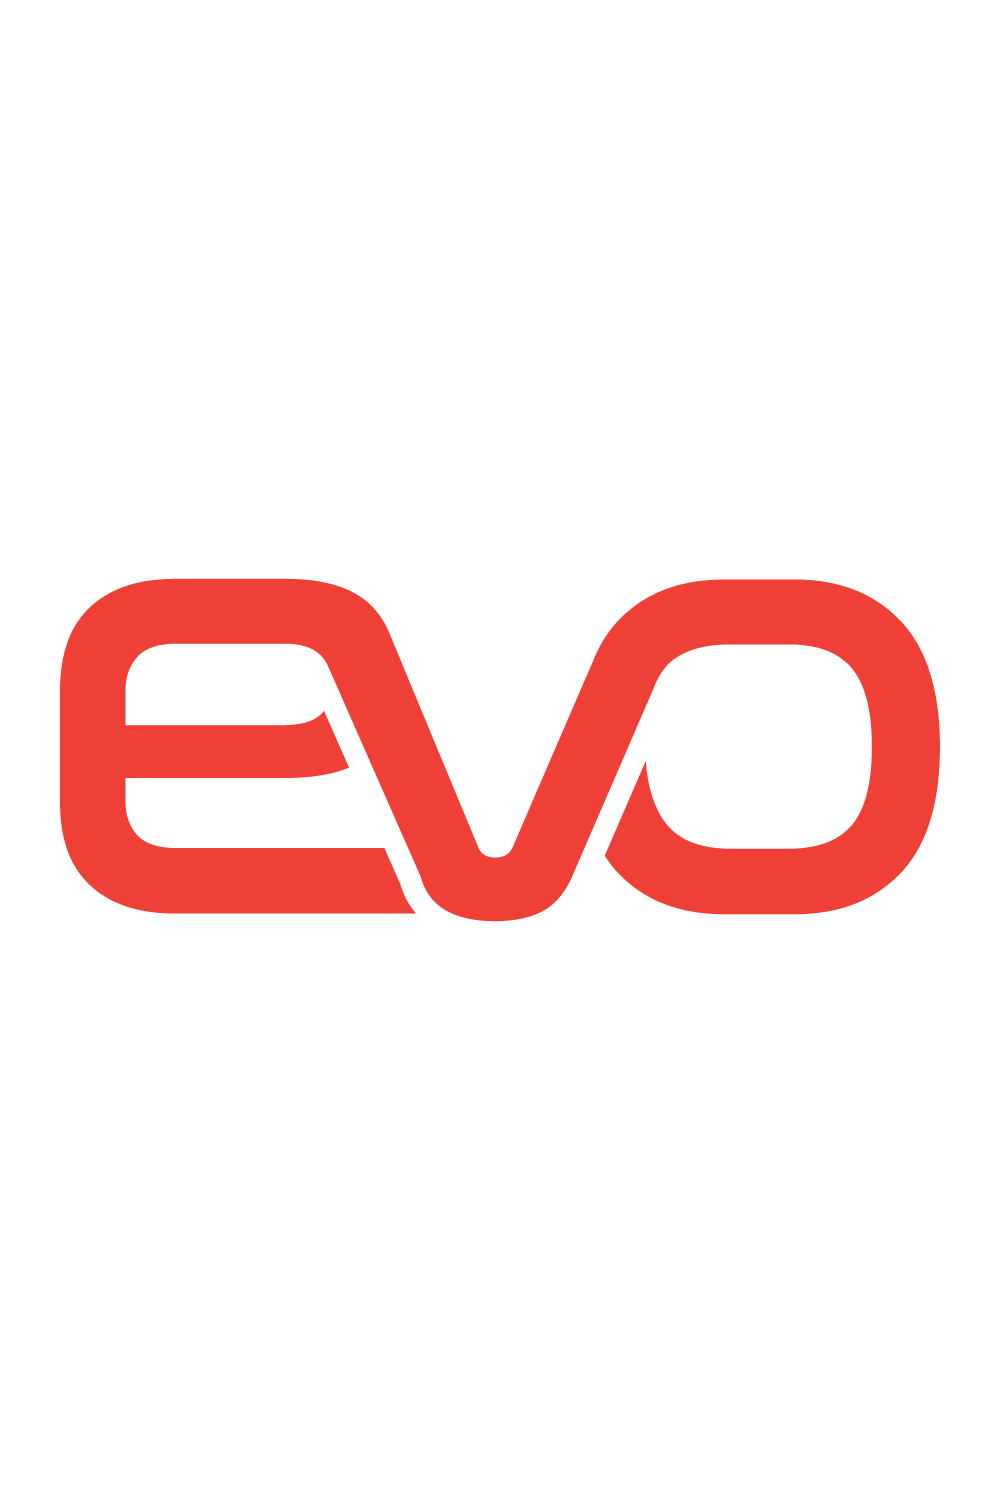 EVO letter logo pinterest preview image.